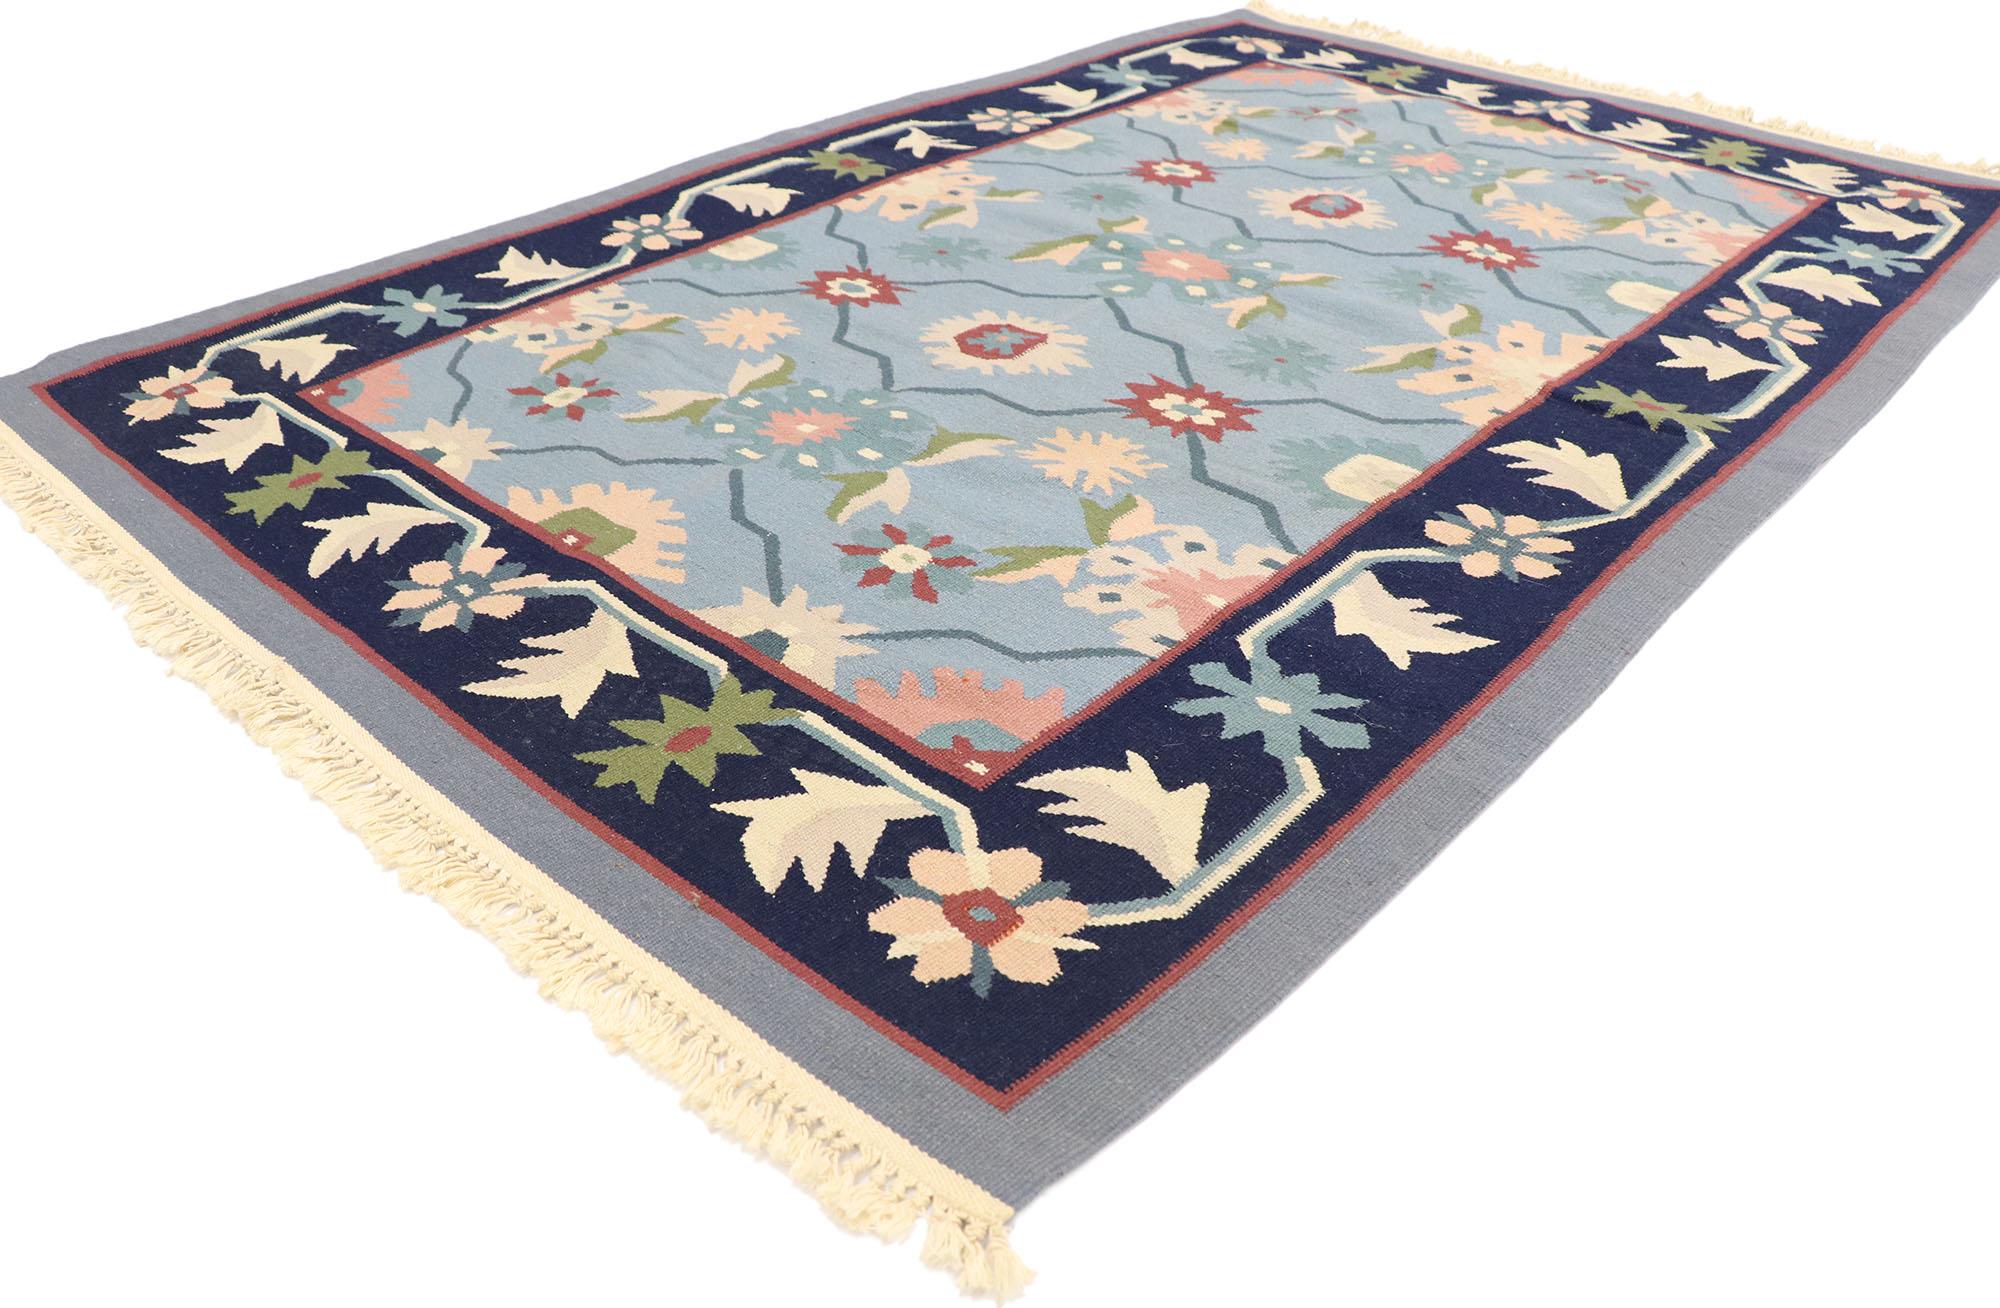 77954 Tapis roumain vintage Kilim floral avec Folk Art Cottage Style 03'11 x 05'11. Délicatement féminin et magnifiquement traditionnel, ce tapis kilim roumain floral en laine tissé à la main est prêt à impressionner. Le champ abrasif bleu ciel